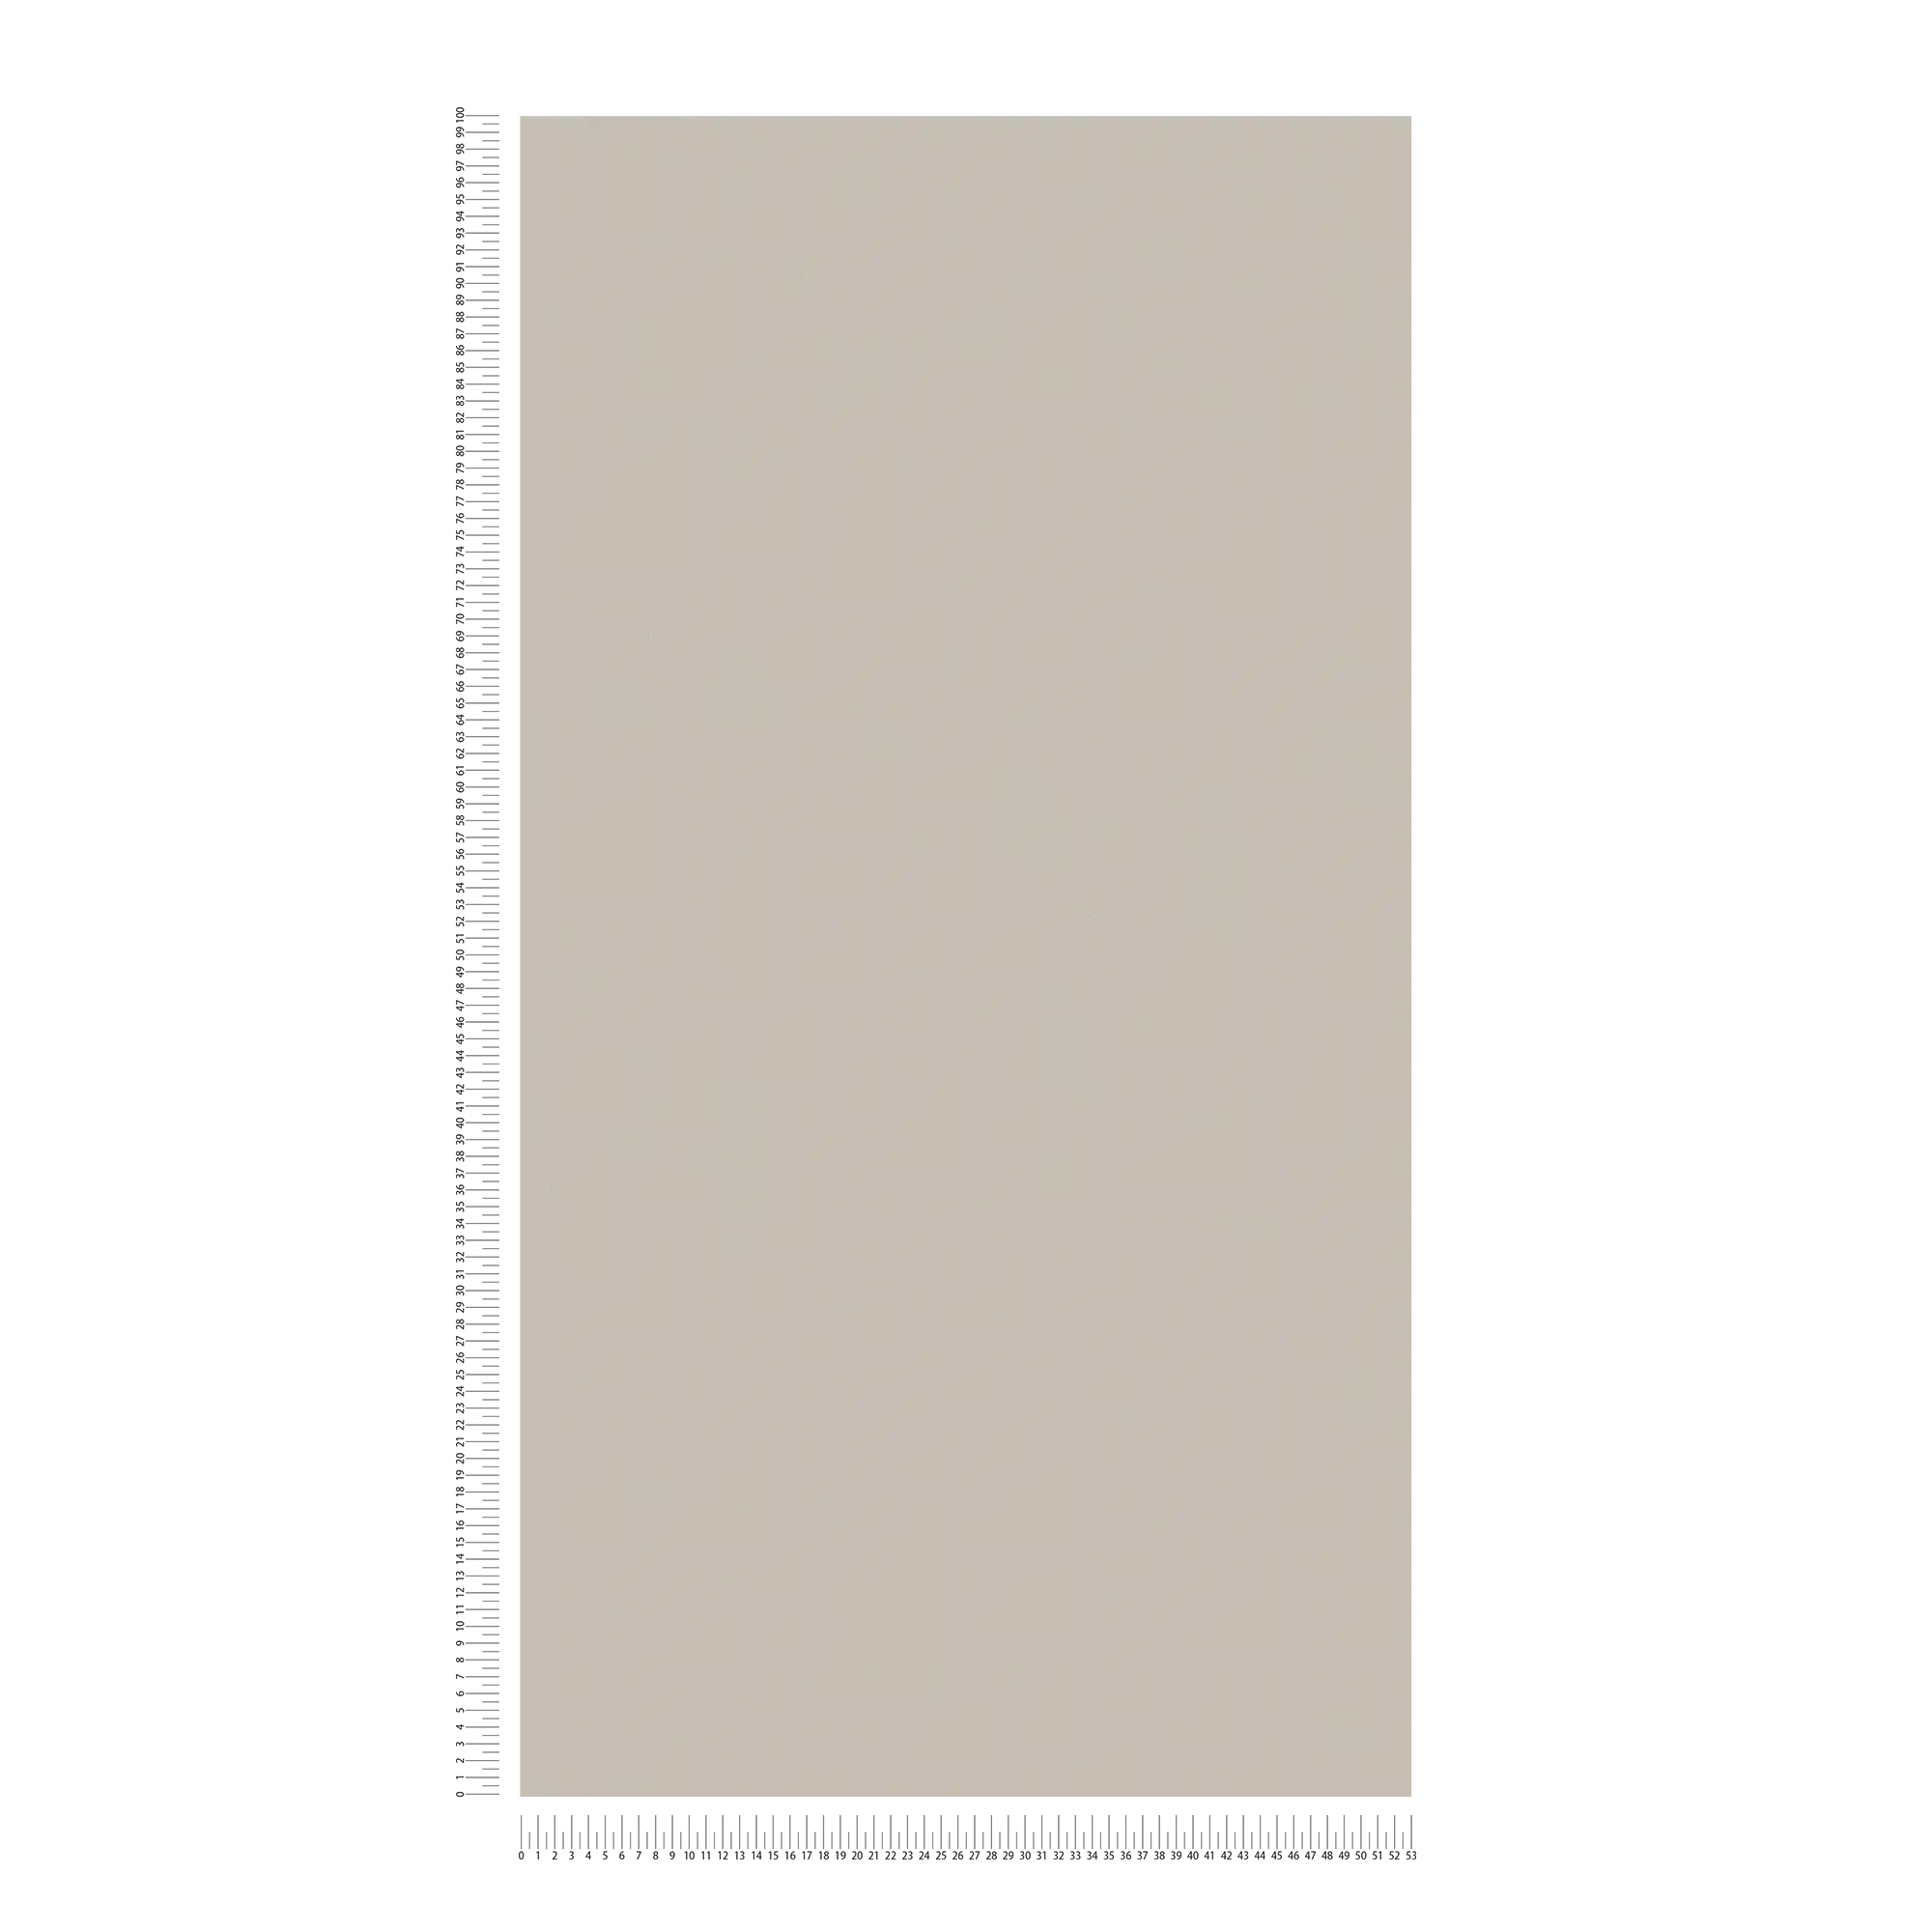             Eenheid behang warme kleur, gestructureerd - bruin, grijs
        